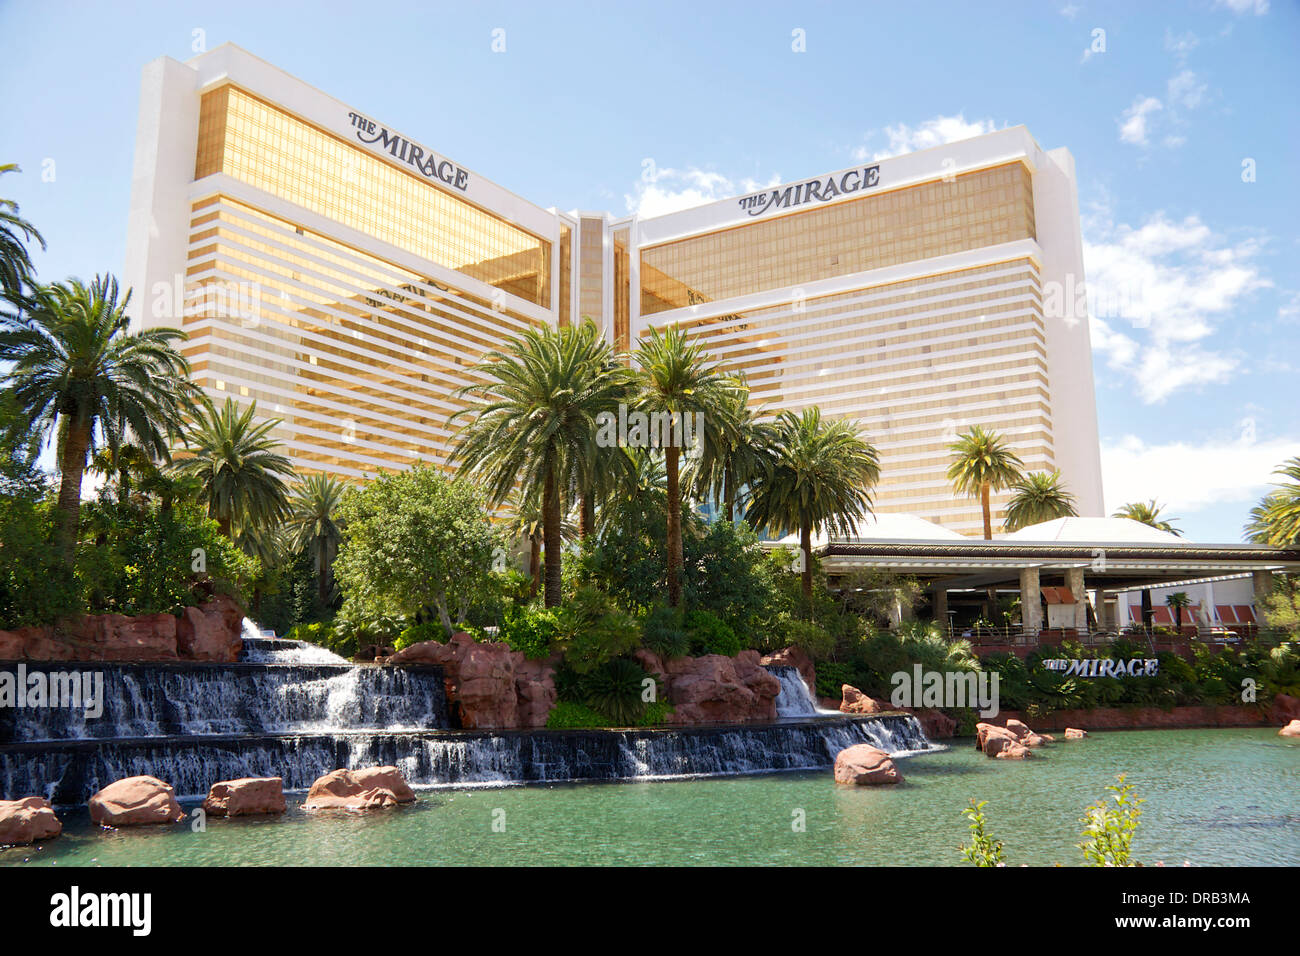 The Mirage hotel and casino, Las Vegas Strip, Las Vegas, Nevada, USA Stock Photo